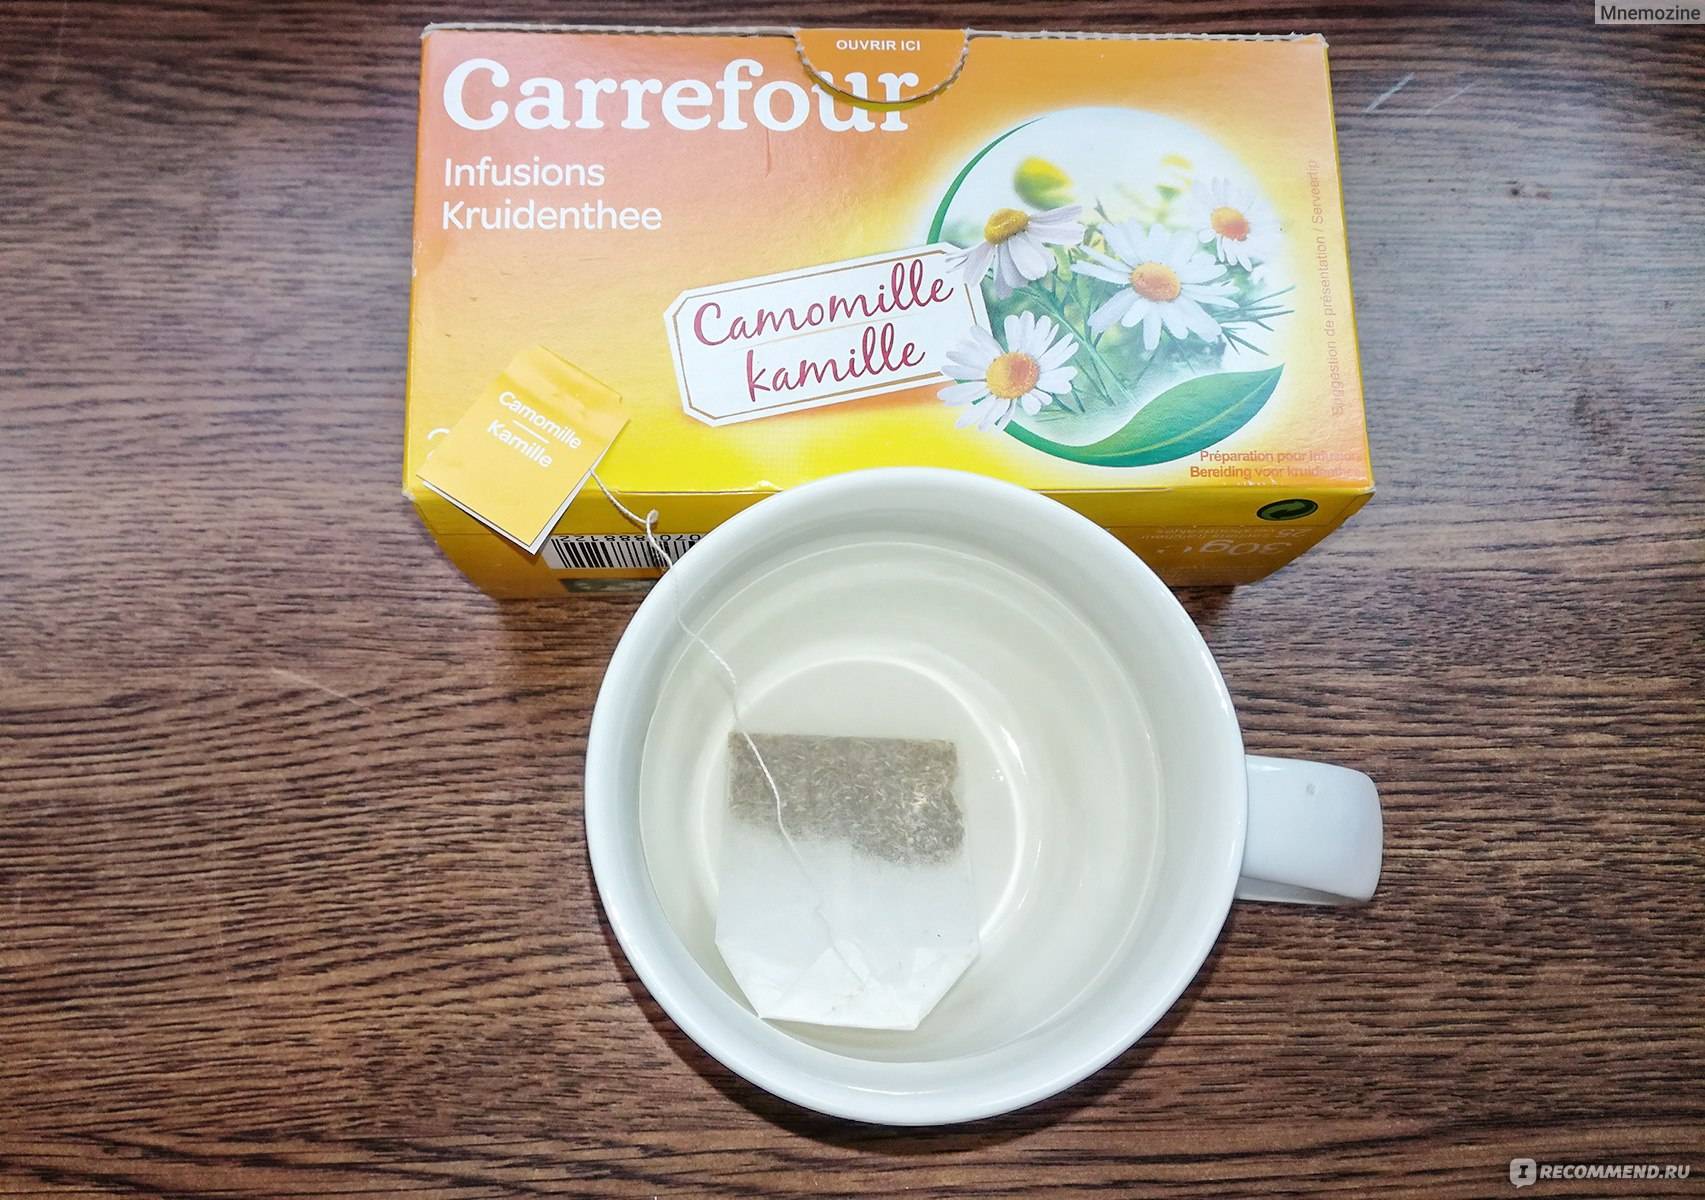 Как правильно пить ромашковый чай. рецепты чая из ромашки | блог о красоте и здоровье